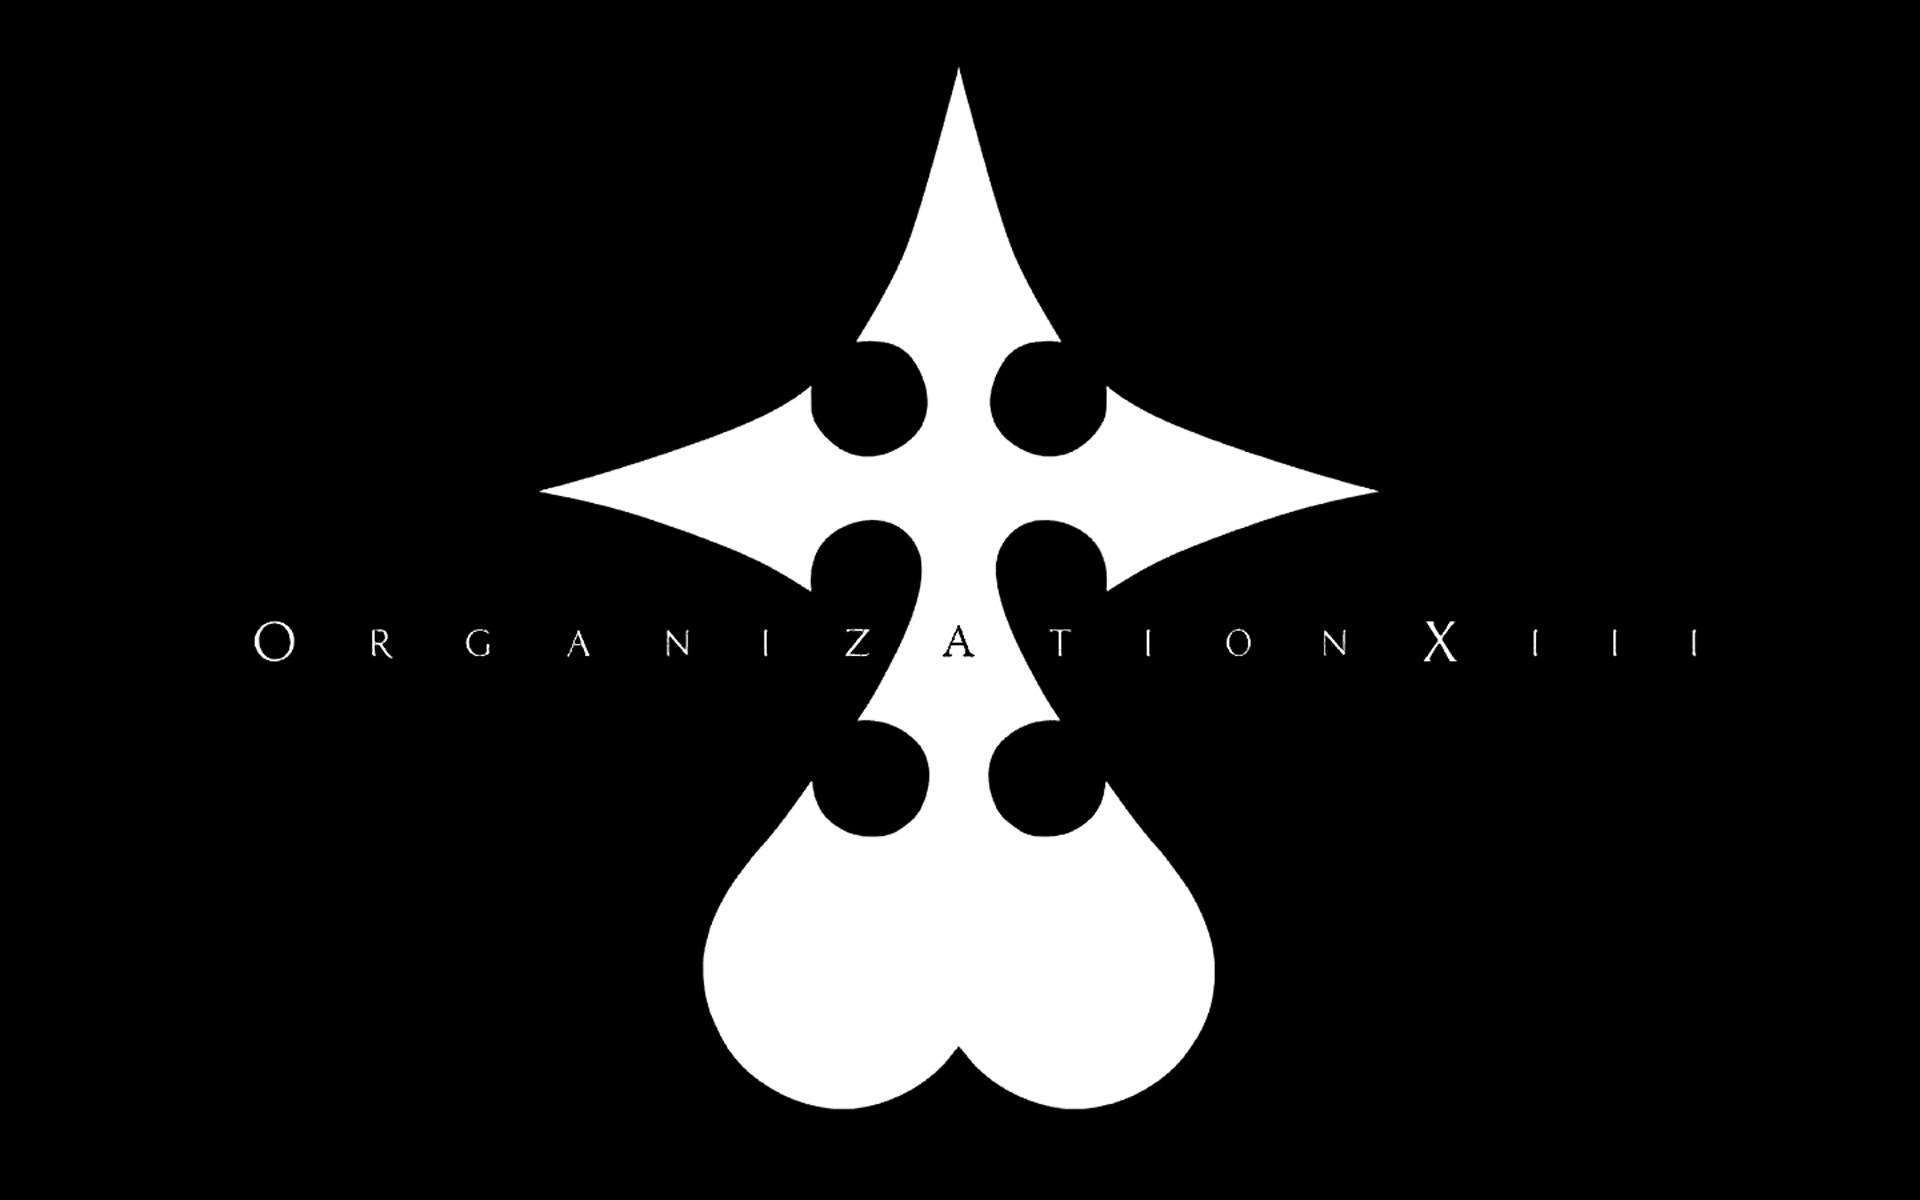 черно-белое изображение, видеоигры, Kingdom Hearts, минималистичный, Организация XIII - обои на рабочий стол